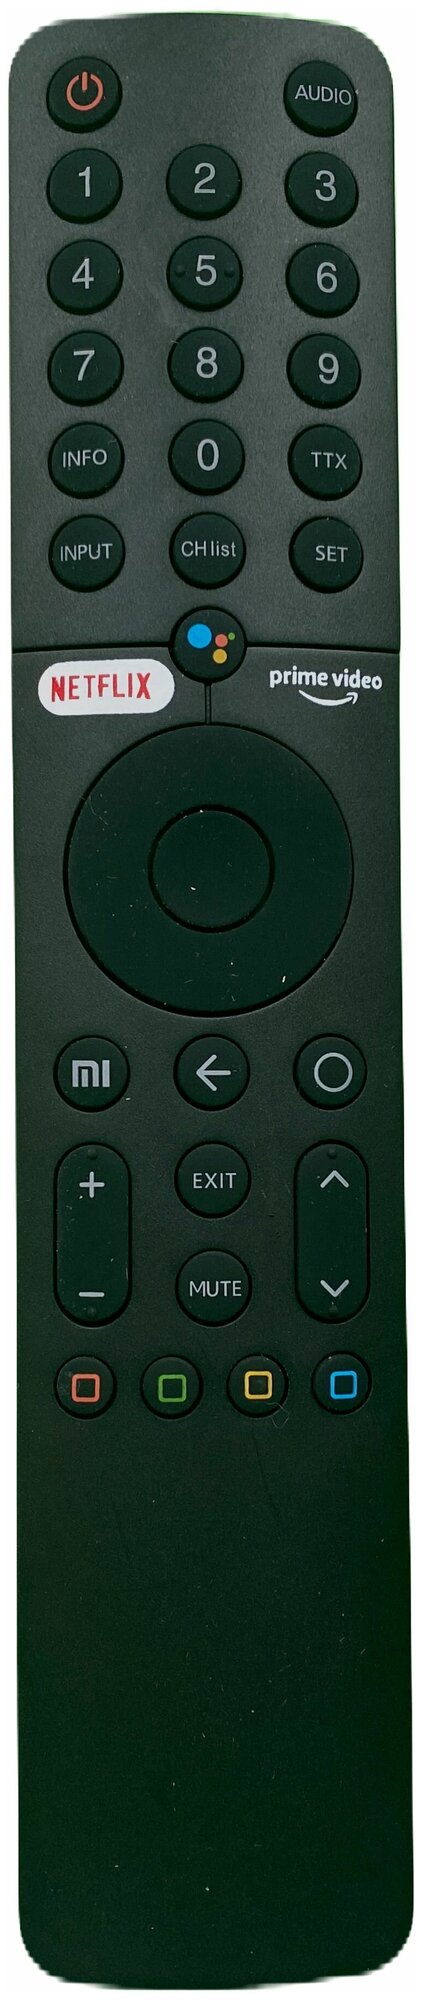 Пульт с голосовым поиском XMRM-19 для телевизора Xiaomi